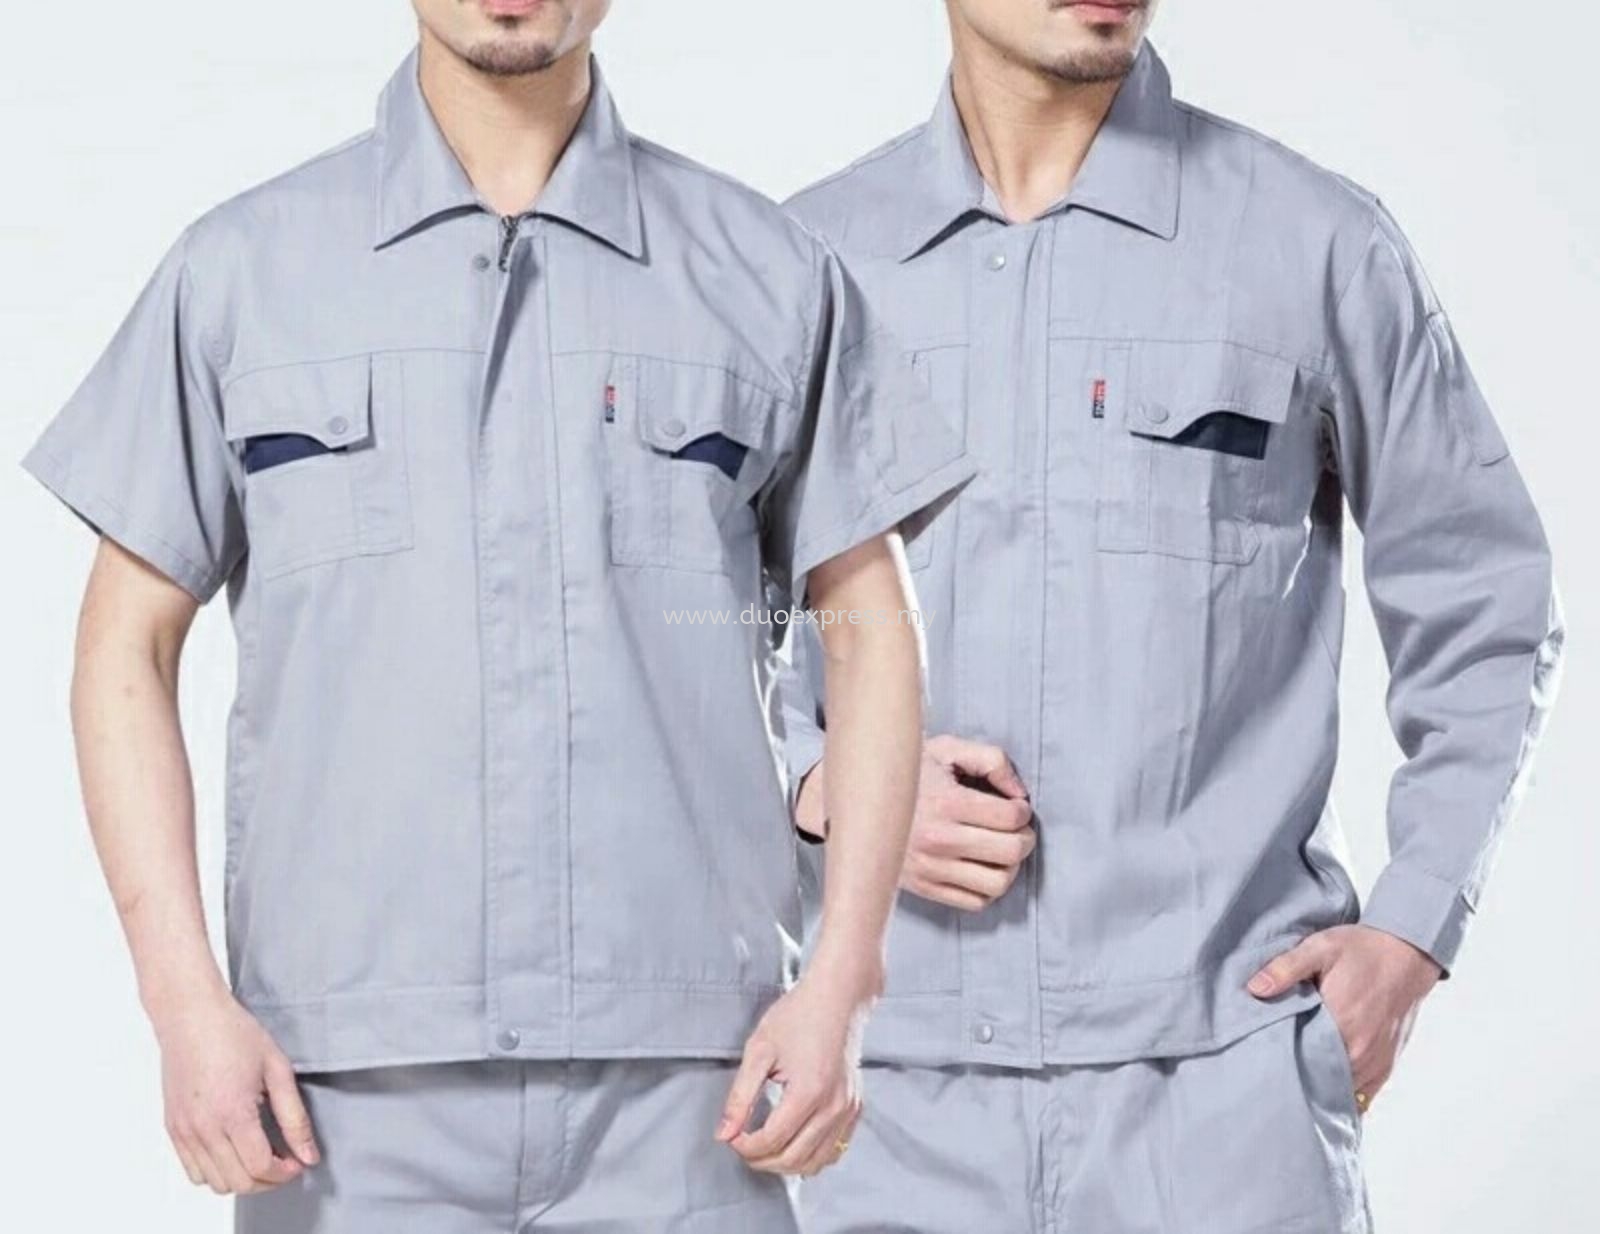 Factory Uniform. Uniform Custom Made Selangor, KL, Malaysia | Duo ...